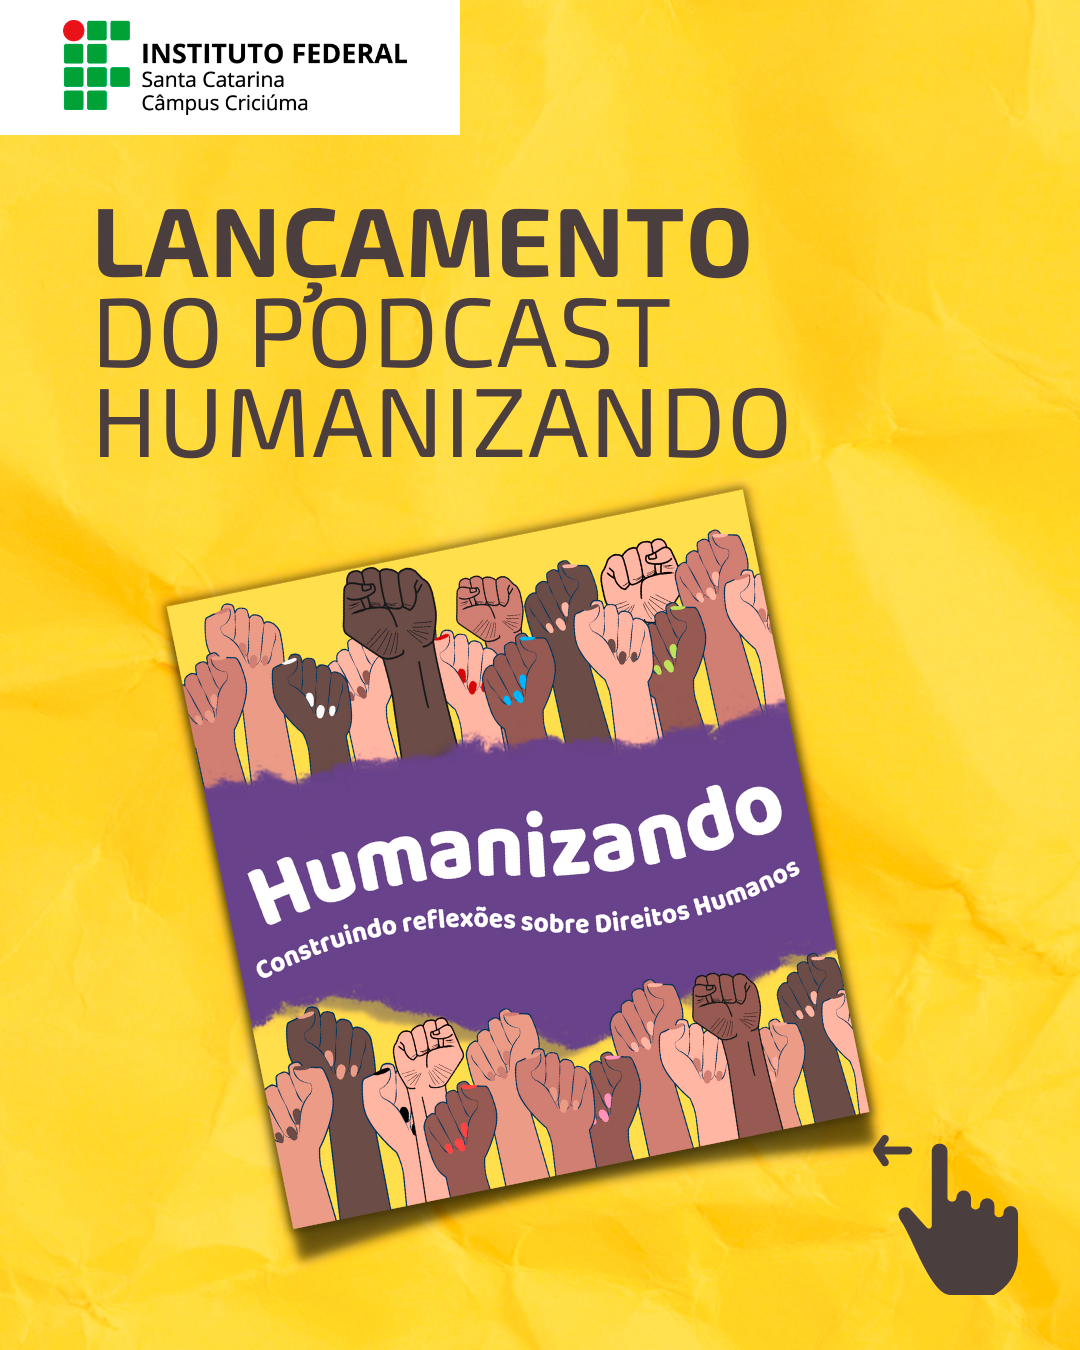 Iniciativa é da Comissão para Diversidade e Direitos Humanos do Câmpus Criciúma | Foto: Divulgação